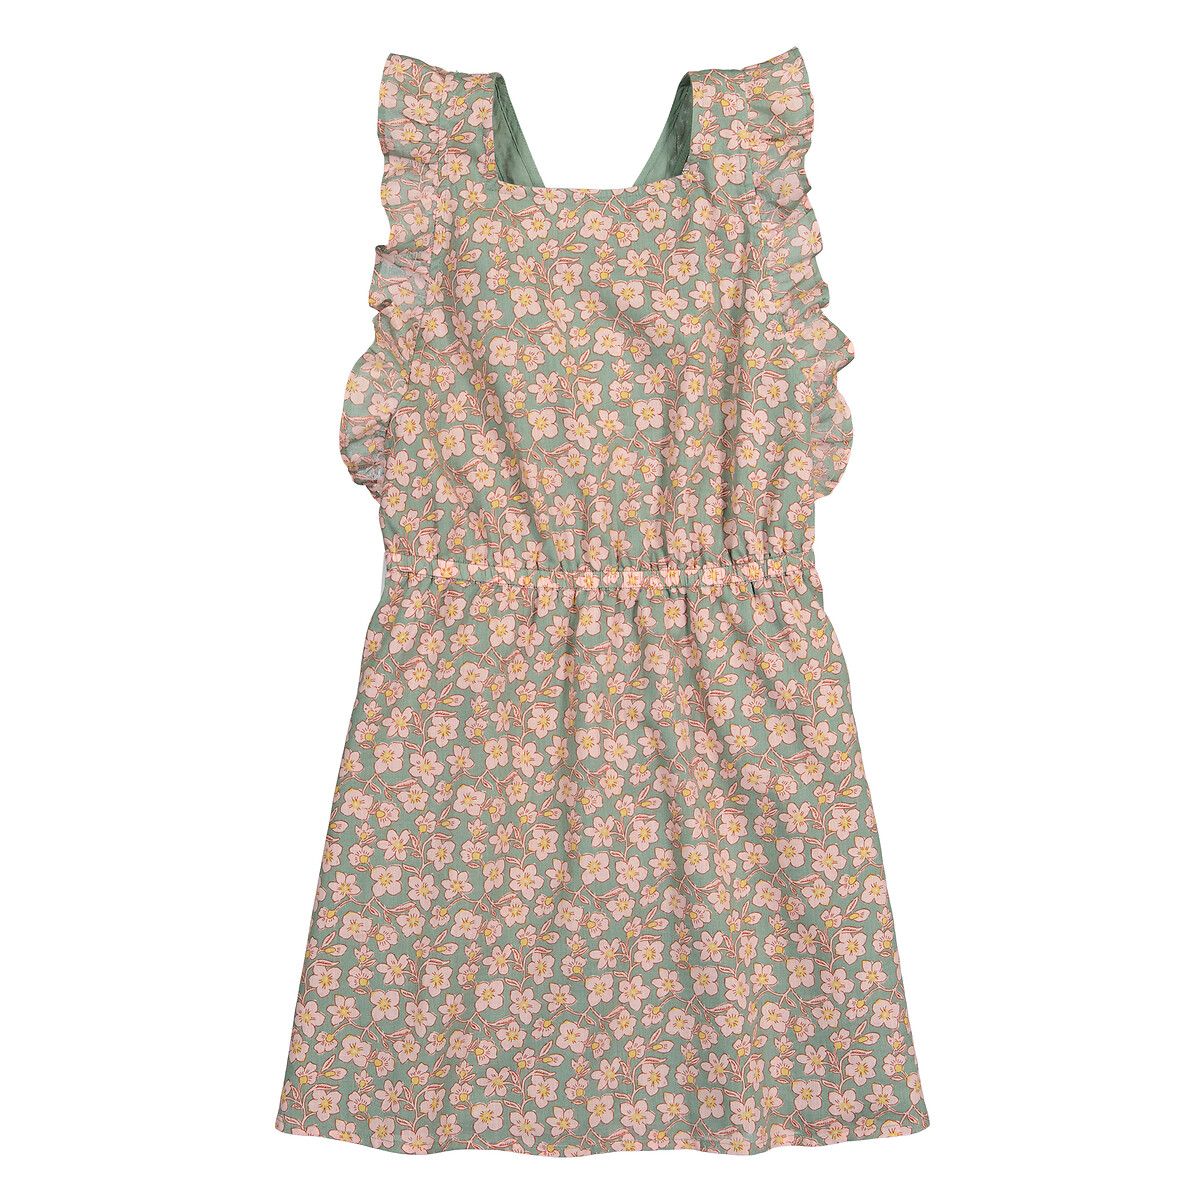 Платье Без рукавов с воланами и принтом цветы 5 лет - 108 см зеленый LaRedoute, размер 5 лет - 108 см - фото 3